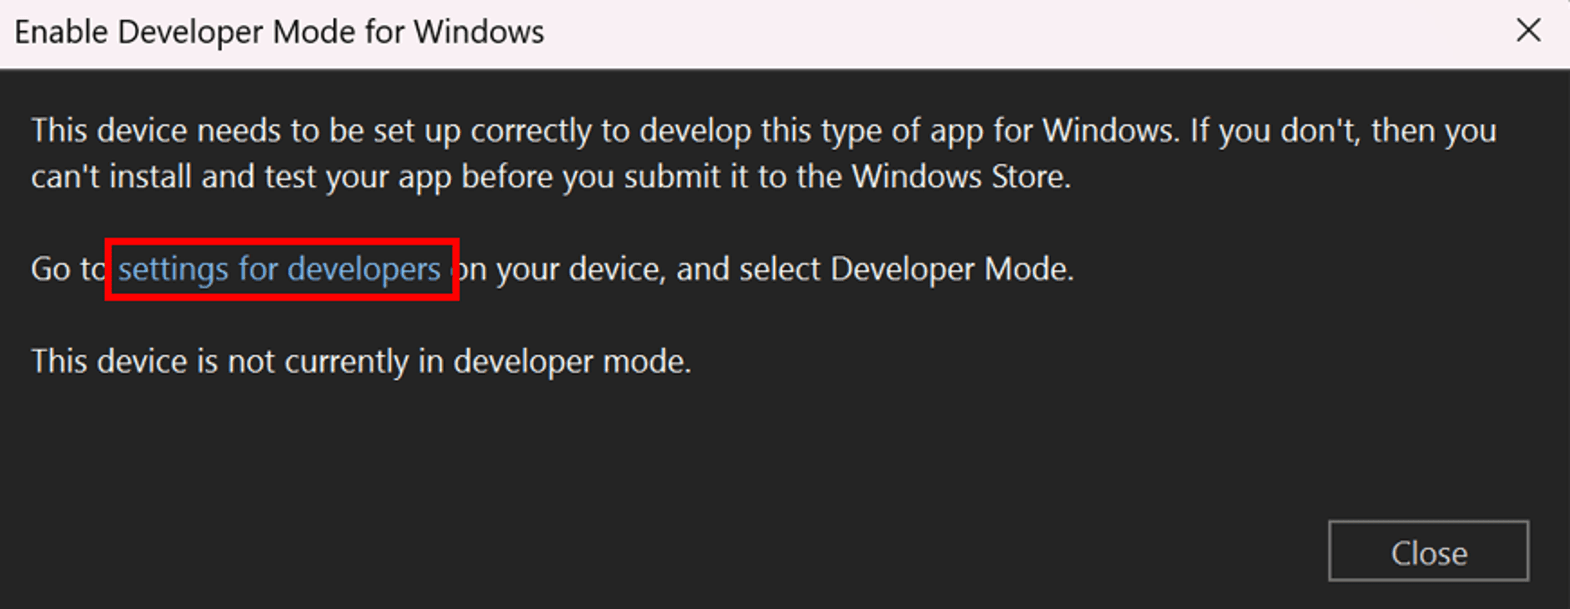 “为 Windows 启用开发人员模式”对话框。